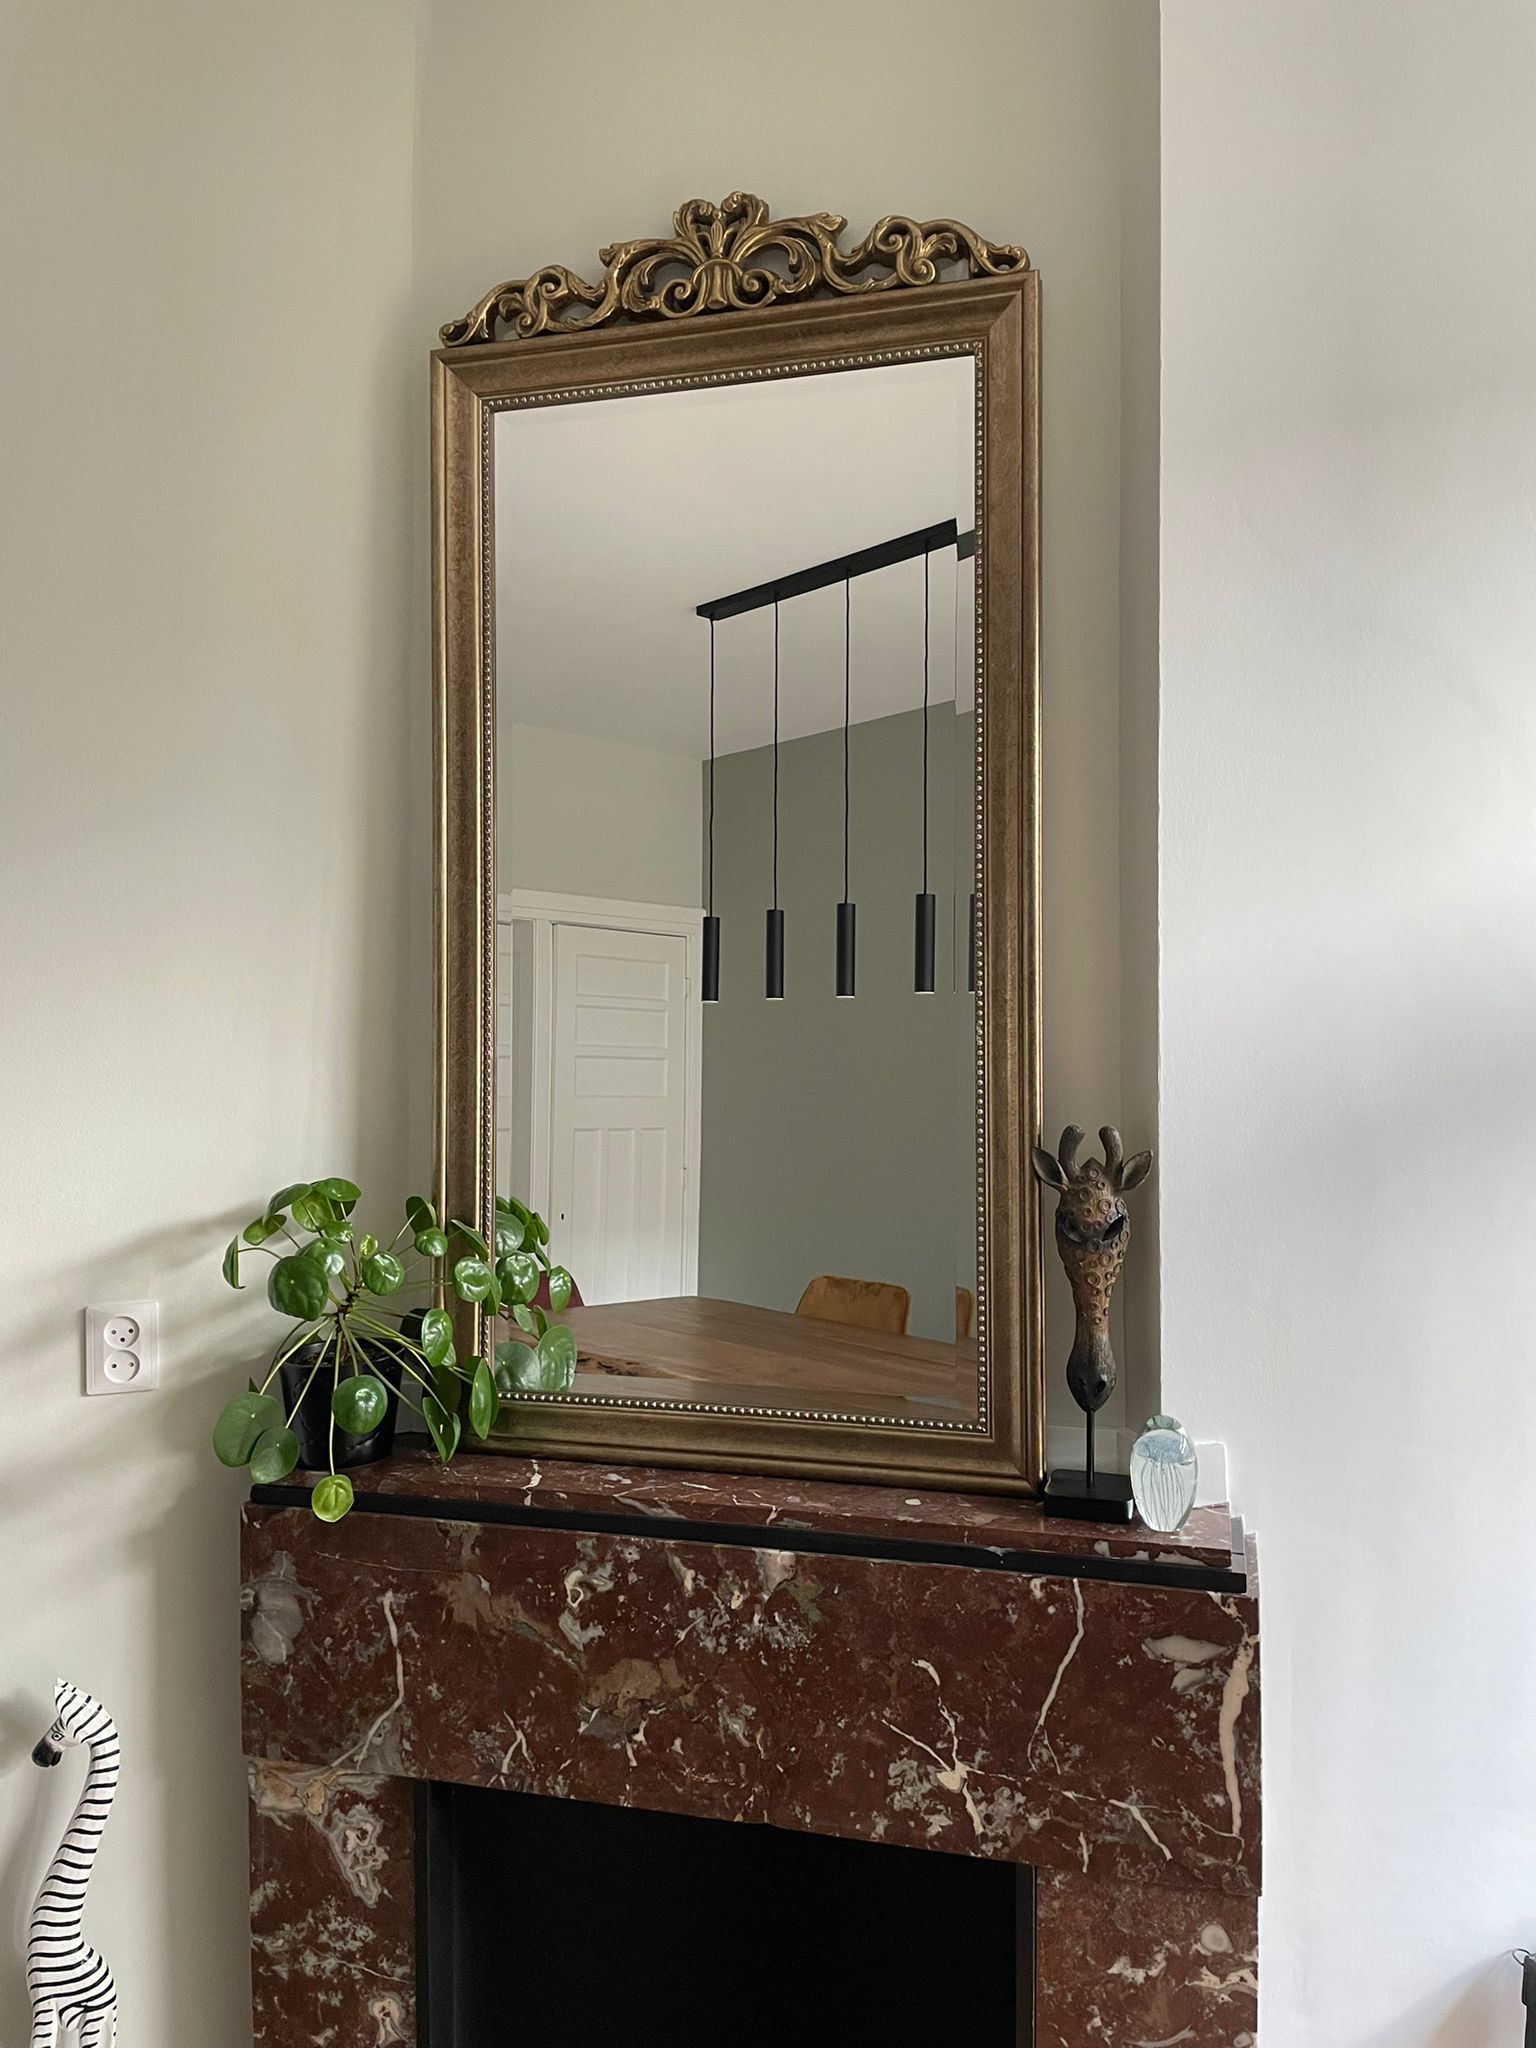 https://foto.barokspiegel.nl/rufino/Grote-spiegel-met-kuif-antiekzilver-brons-schouwspiegel-op-marmer-rode-schouw(2).jpg